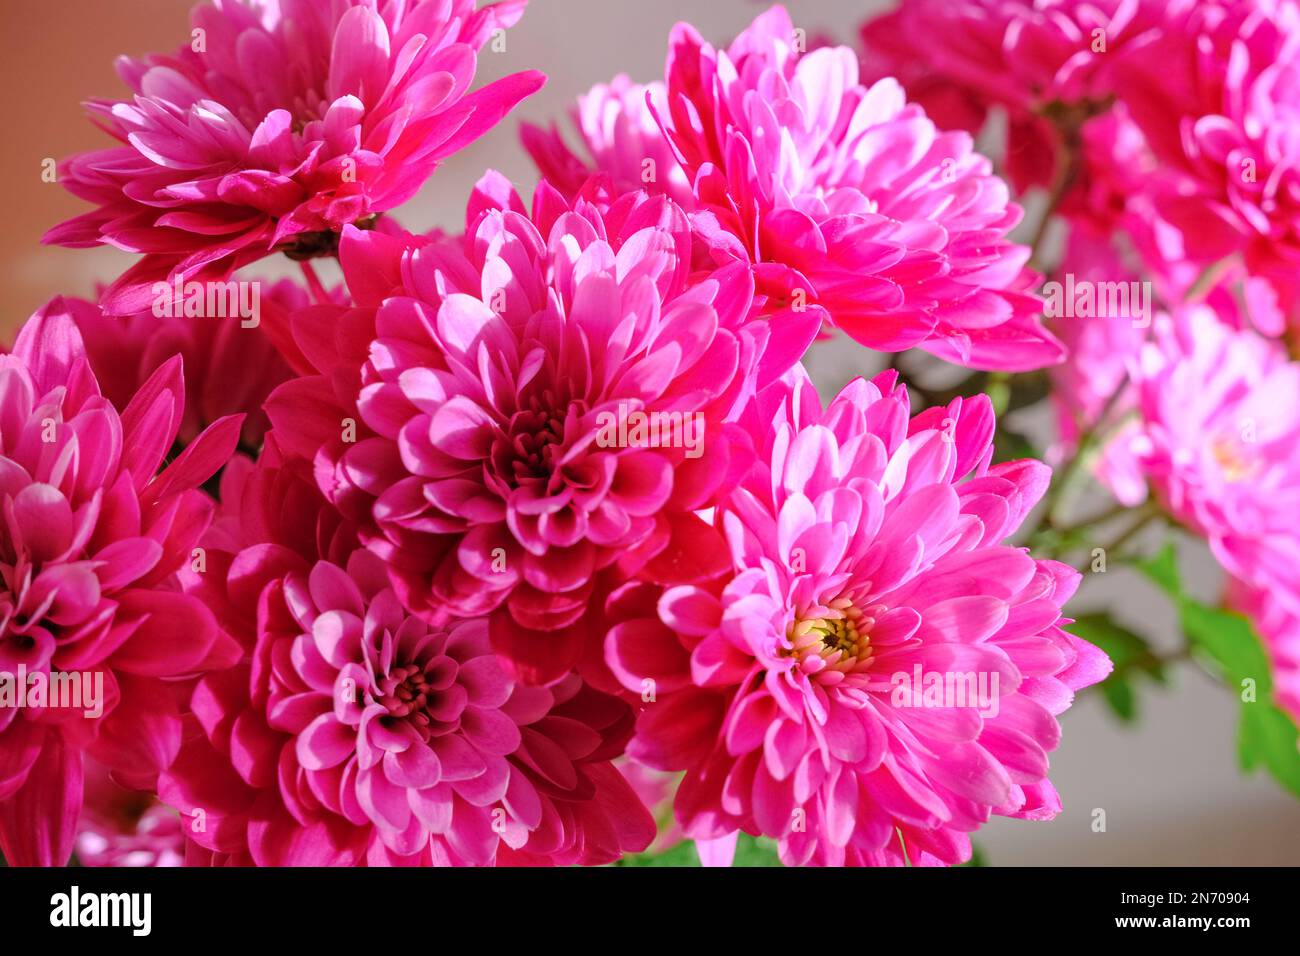 bouquet de fleurs de chrysanthème rose en gros plan. Fond floral. Carte postale. Copier l'espace Banque D'Images